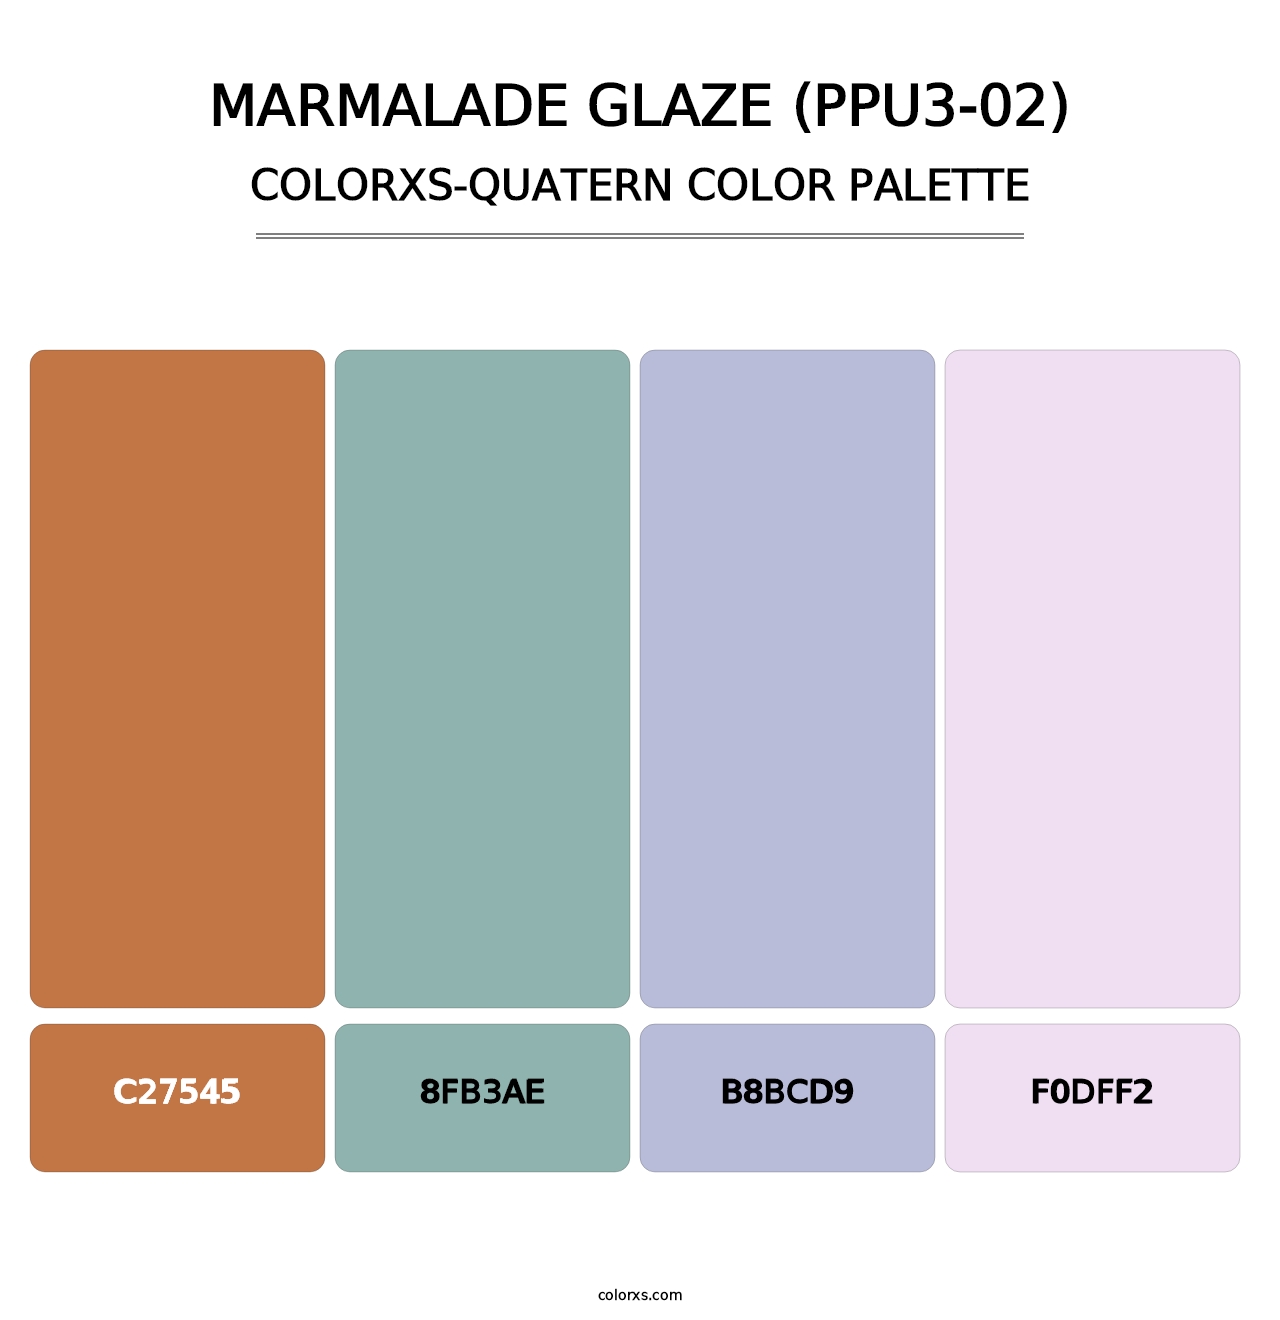 Marmalade Glaze (PPU3-02) - Colorxs Quatern Palette